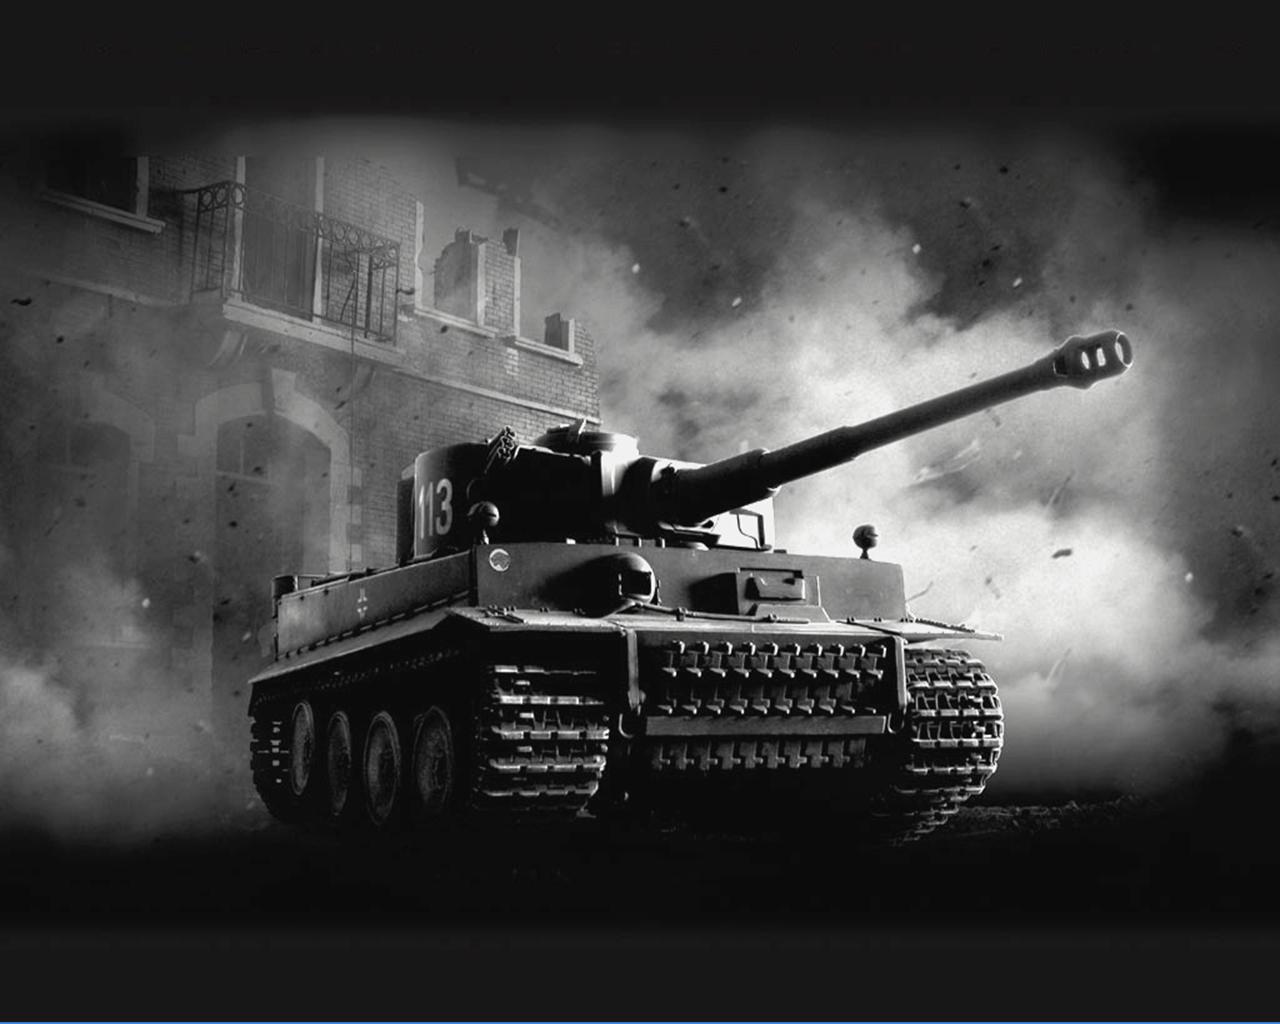 壁紙 戦車 描かれた壁紙 Pzkpfw Vi Tiger I 陸軍 ダウンロード 写真